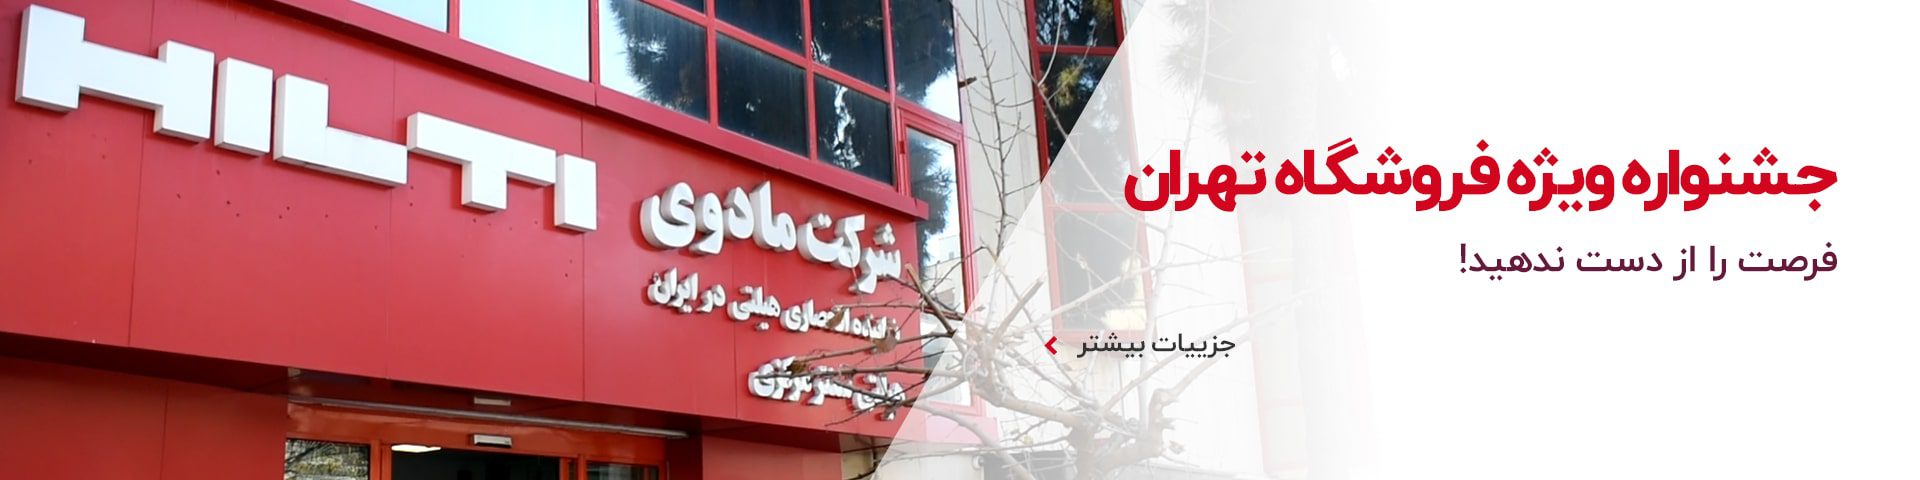 جشنواره ویژه فروشگاه تهران - آذر 1401